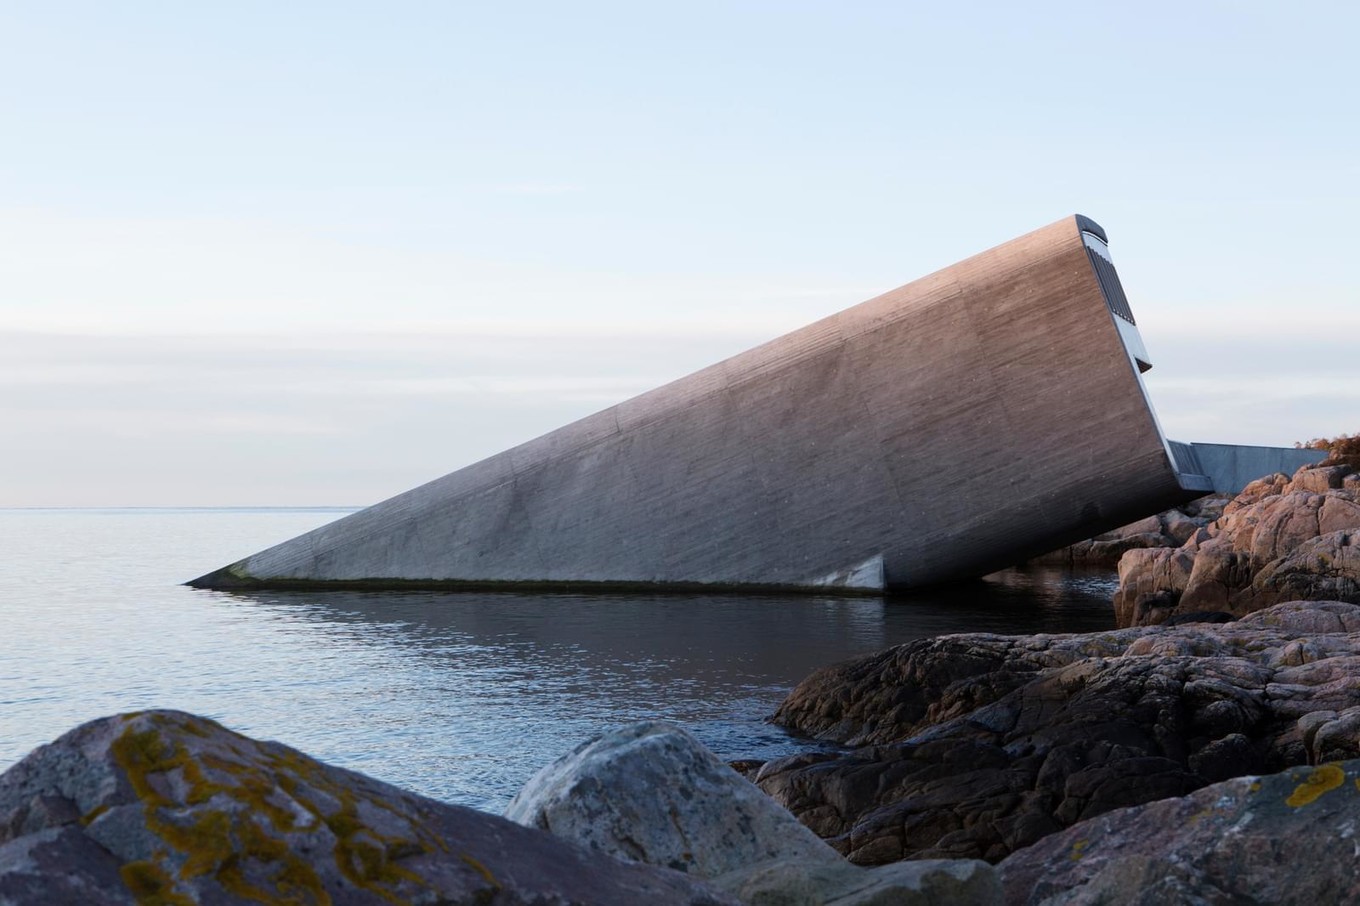 Ресторан Under на дне моря в Норвегии